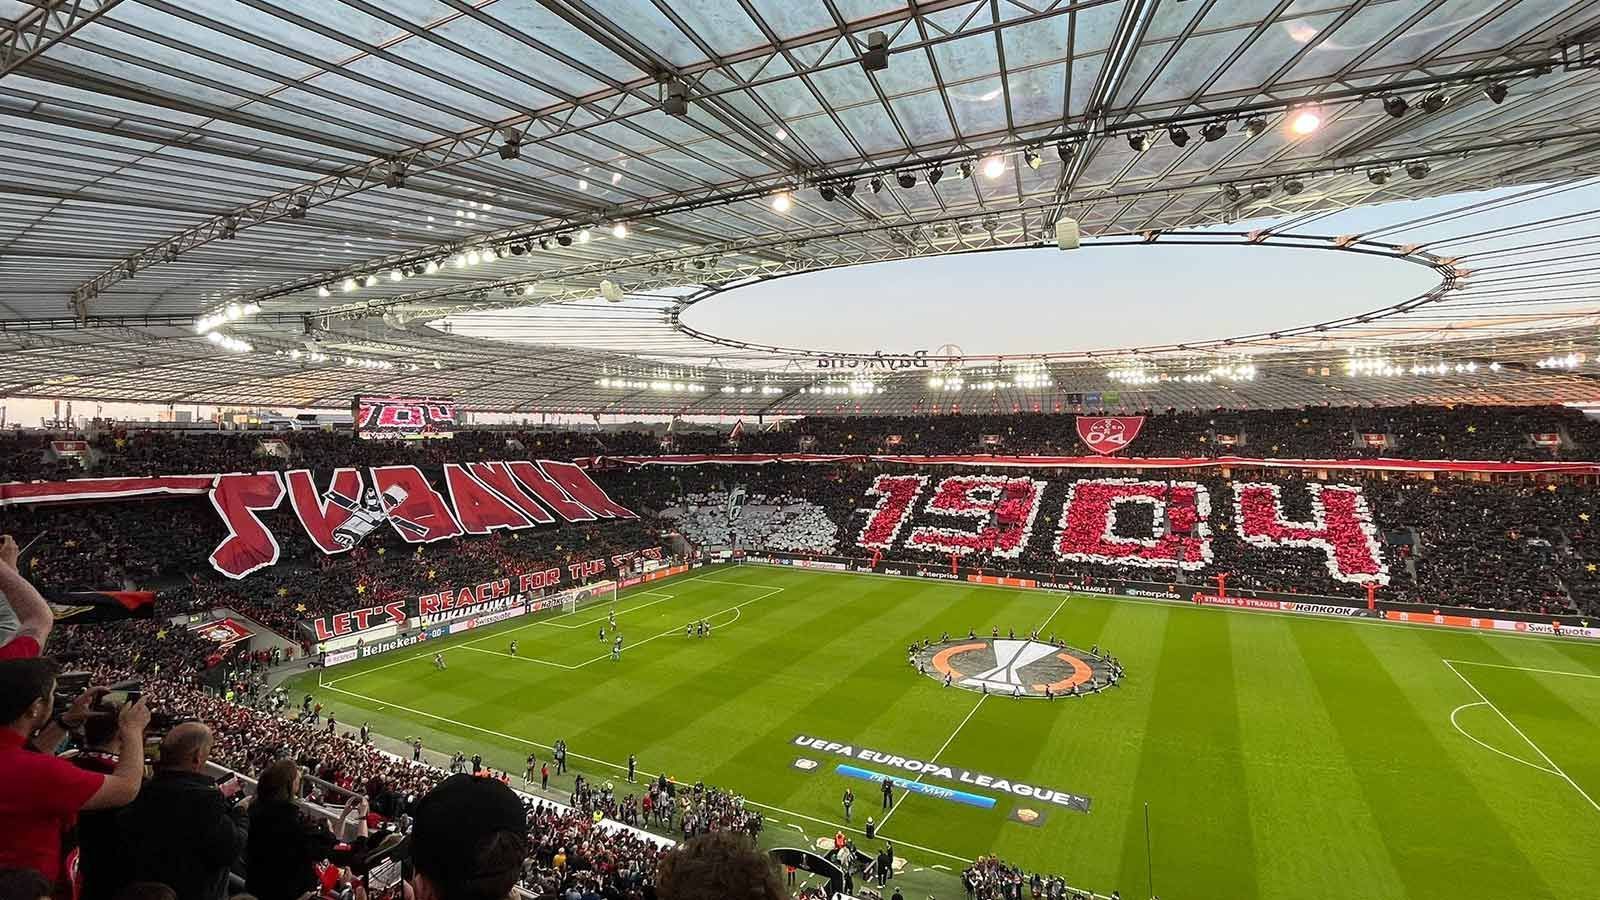 
                <strong>Bayer 04 Leverkusen - Fans wollen gegen AS Rom nach den Sternen greifen</strong><br>
                Nach einem 0:1 aus dem Hinspiel hoffen die Fans von Bayer 04 Leverkusen vor dem Rückspiel im Halbfinale der Europa League immer noch auf ein Weiterkommen. Das Motto: "Lasst uns nach den Sternen greifen". Zum Einlauf spielte die Stadionregie zudem den "Imperial March" aus "Star Wars". Ein stimmungsvoller Auftakt für eine europäische Nacht.
              